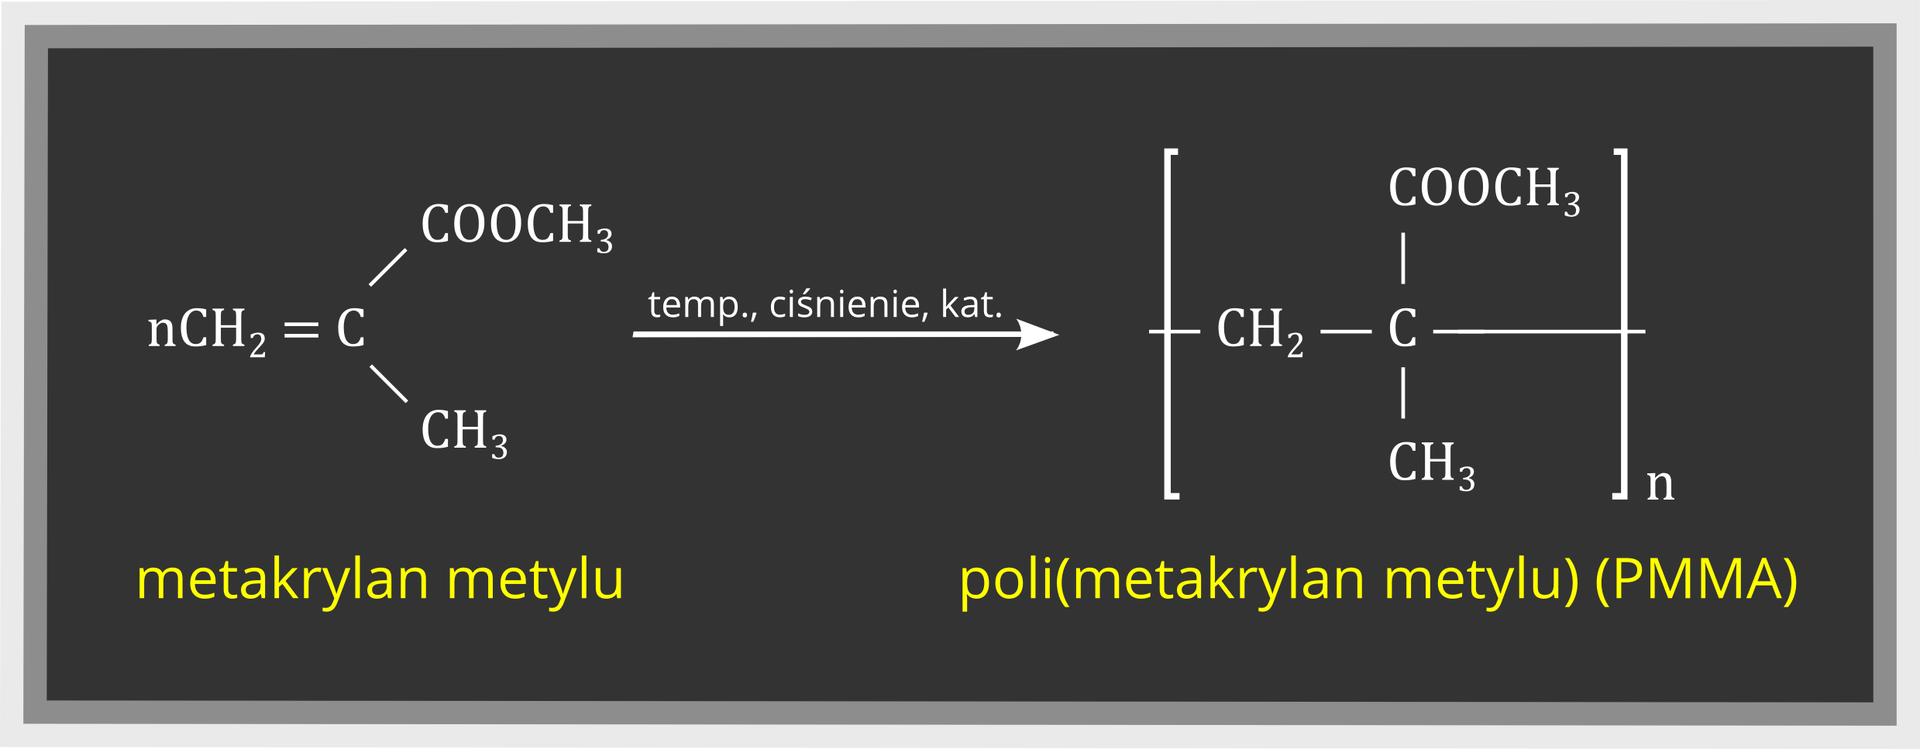 Grafika przedstawiająca reakcję polimeryzacji metakrylanu metylu. Cząsteczki zostały przedstawione za pomocą wzorów grupowych. N cząsteczek metakrylanu etylu C H indeks dolny dwa koniec indeksu wiązanie podwójne C 2 wiązania pojedyncze, przy jednym grupa C O O C H indeks dolny 3 koniec indeksu, przy drugim grupa C H indeks dolny 3 koniec indeksu pod wpływem odpowiedniej temperatury, ciśnienia i katalizatora prowadzi do otrzymania poli(metakrylanu metylu) o skrócie PMMA C od niego odchodzą 4 wiązania pojedyncze, do nich dołączone grupy C H indeks dolny 3 koniec indeksu, do drugiego C O O C H indeks dolny 3 koniec indeksu, do trzeciego C H indeks dolny 2 koniec indeksu od której odchodzi pojedyncze wiązanie. Czwarte wiązanie niepołączone z niczym. Wolne wiązania przecinają nawiasy kwadratowe zamykające związek. w indeksie dolnym N. Pod wzorami zostały zapisane nazwy związków biorących udział reakcji.